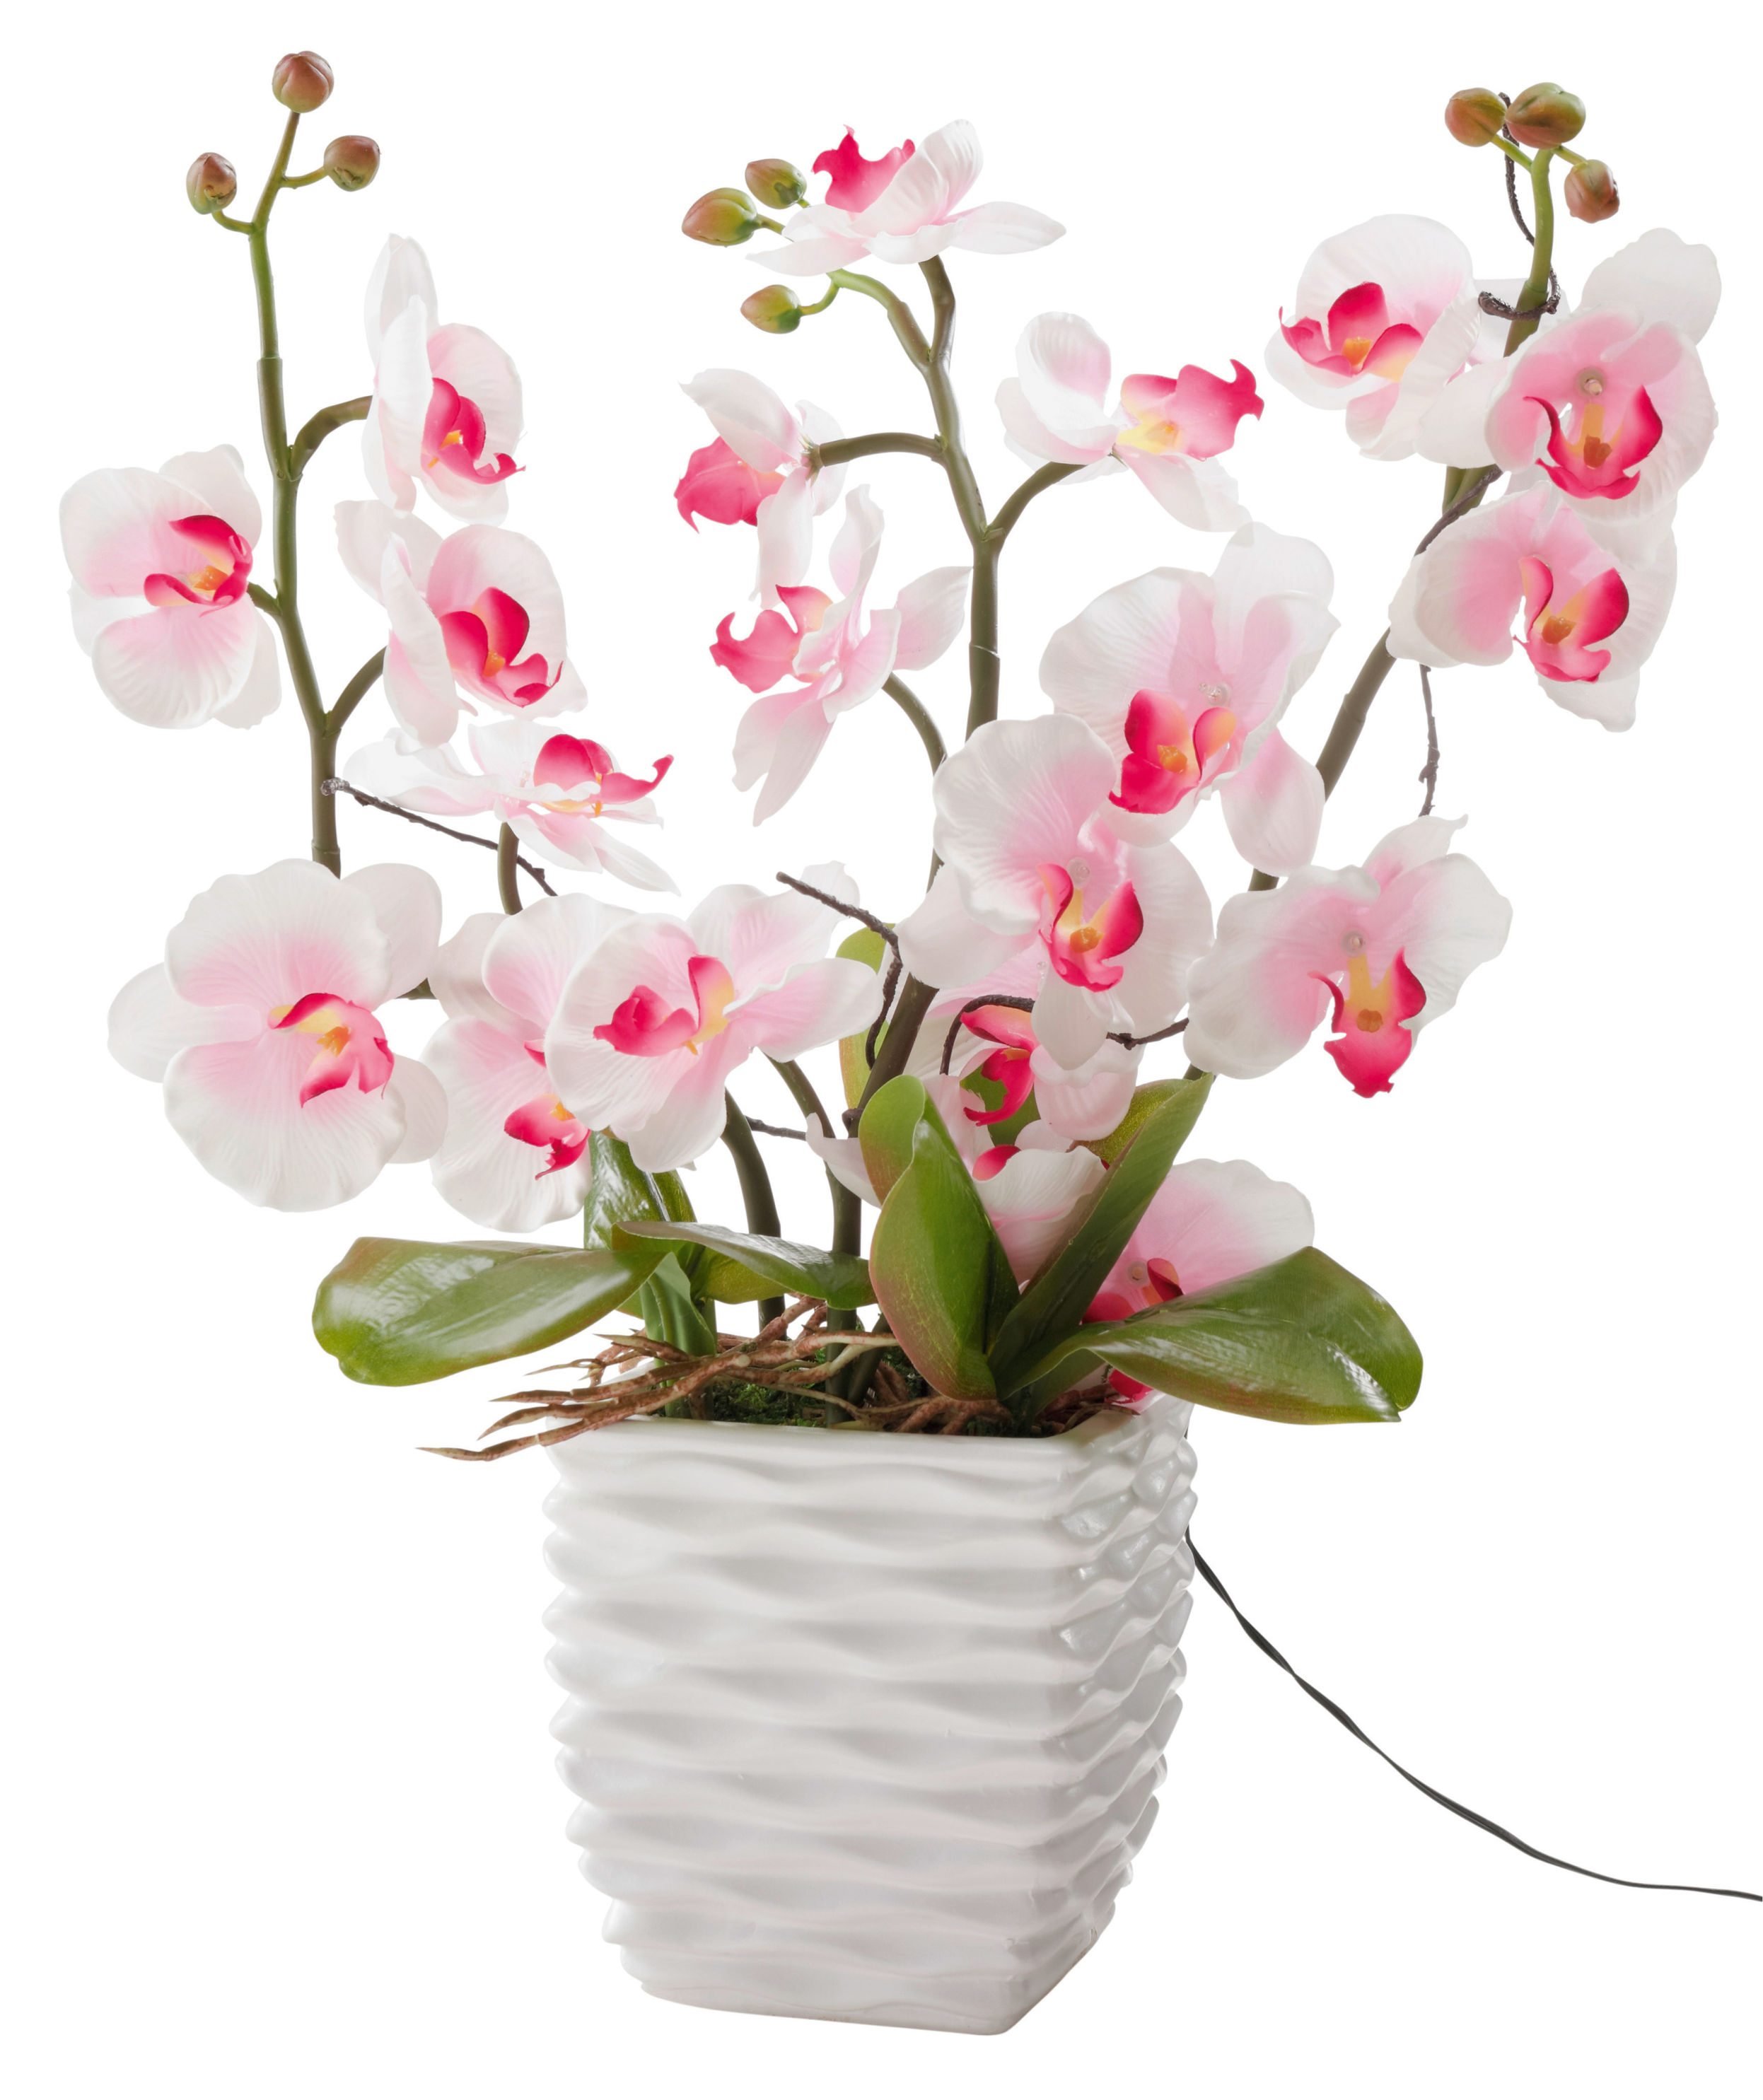 Deko-Orchidee mit LEDs jetzt bei Weltbild.de bestellen